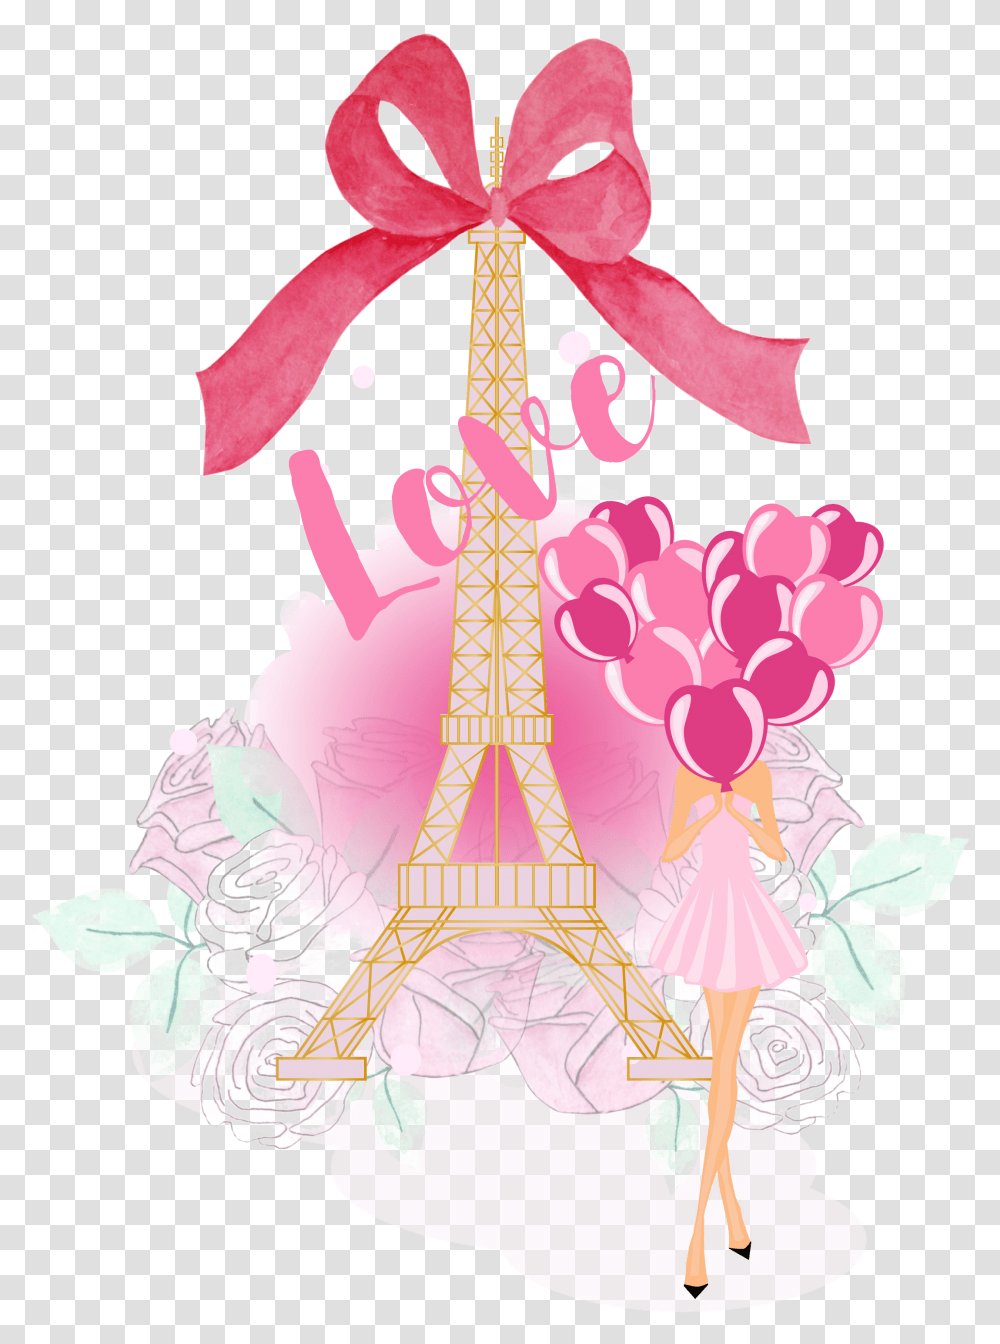 Paris Images Arts Clip Art, Graphics, Floral Design, Pattern, Tree Transparent Png